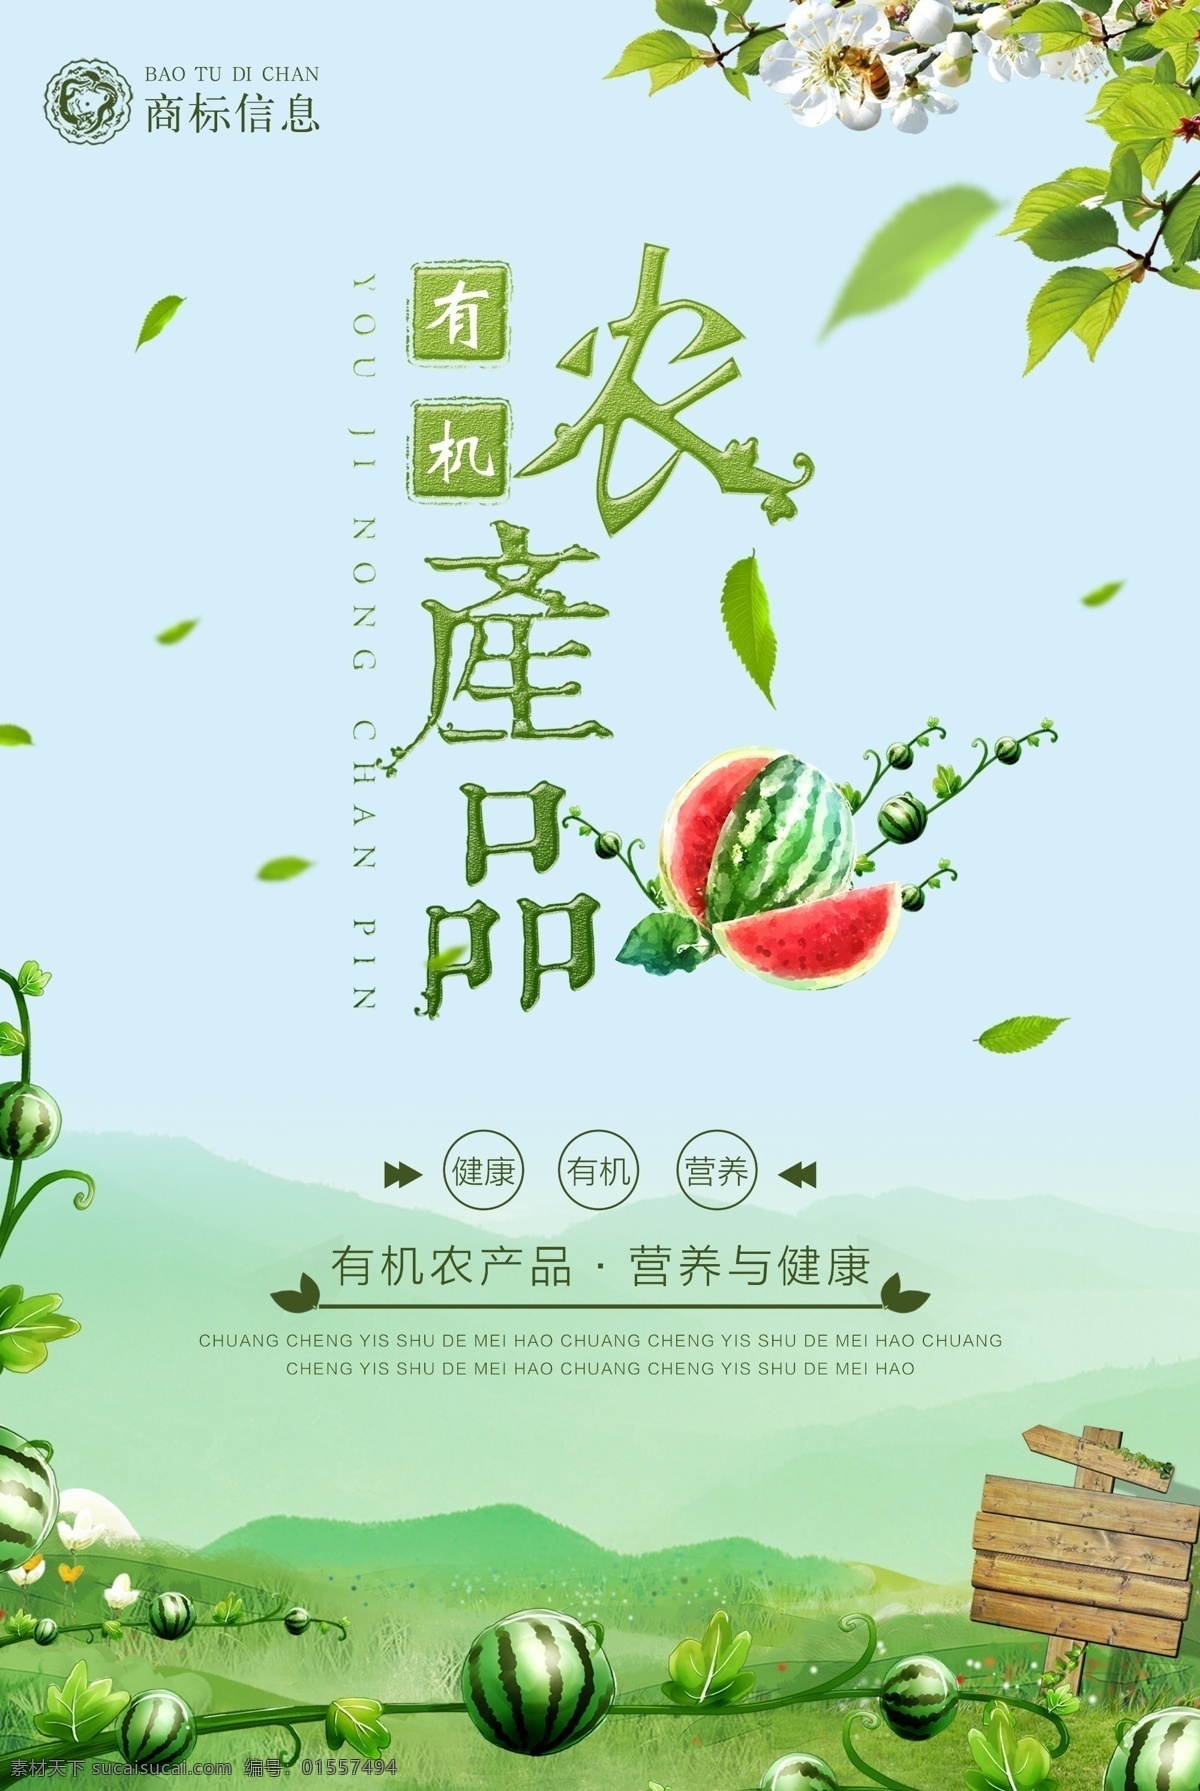 千 图 网 绿色 有机 农产品 宣传海报 宣传 海报